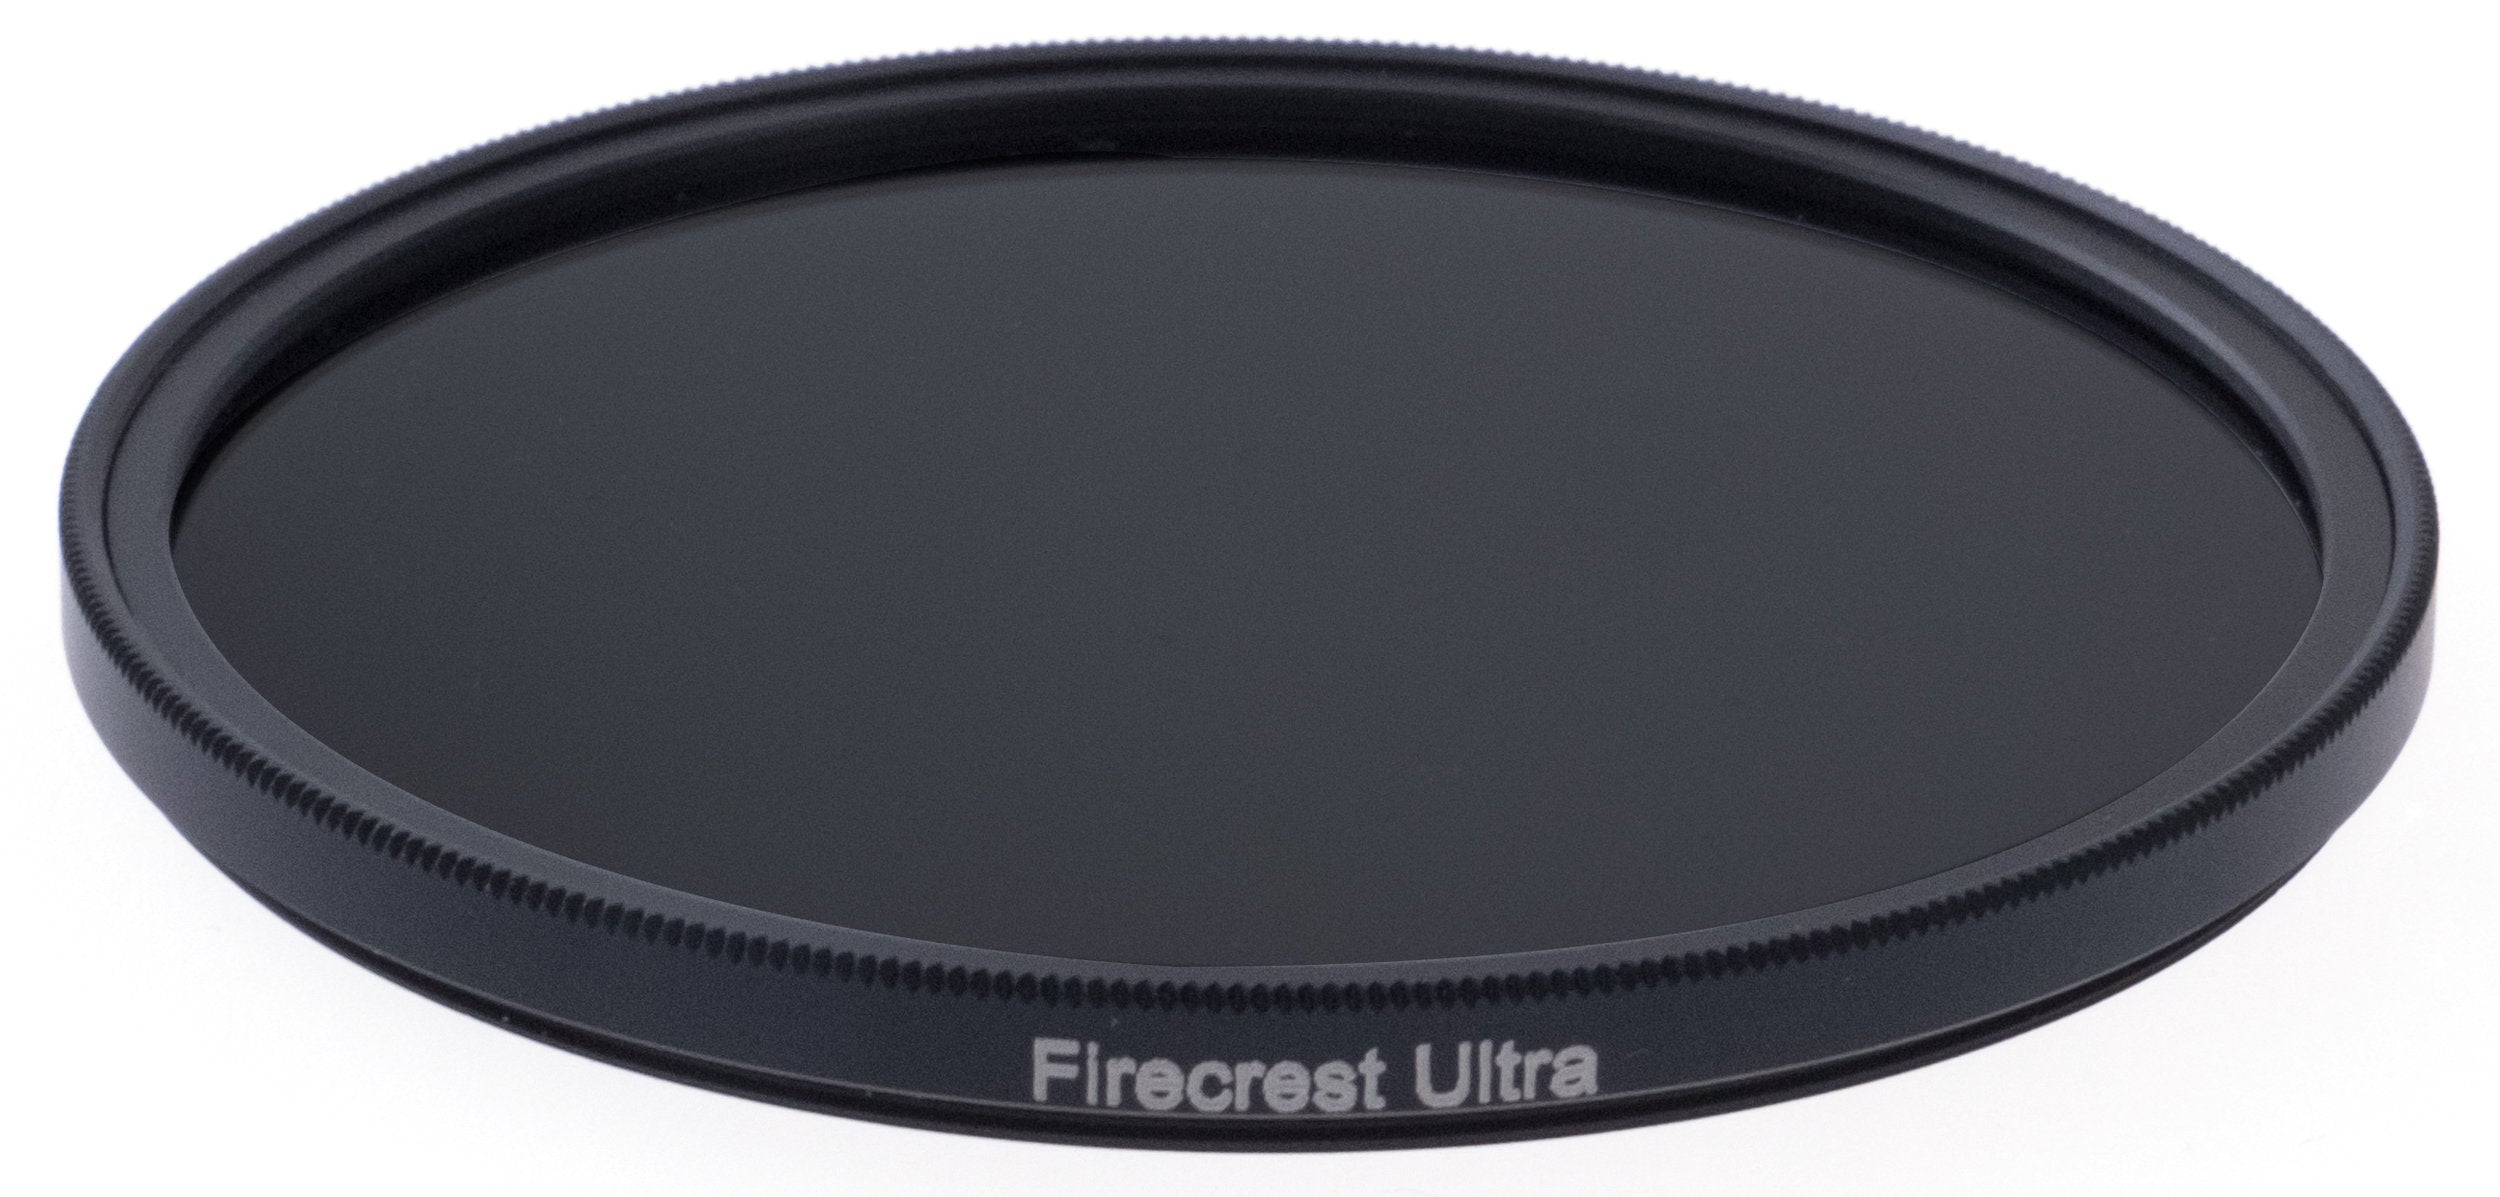 Firecrest Ultra Circular ND - 82mm to 127mm